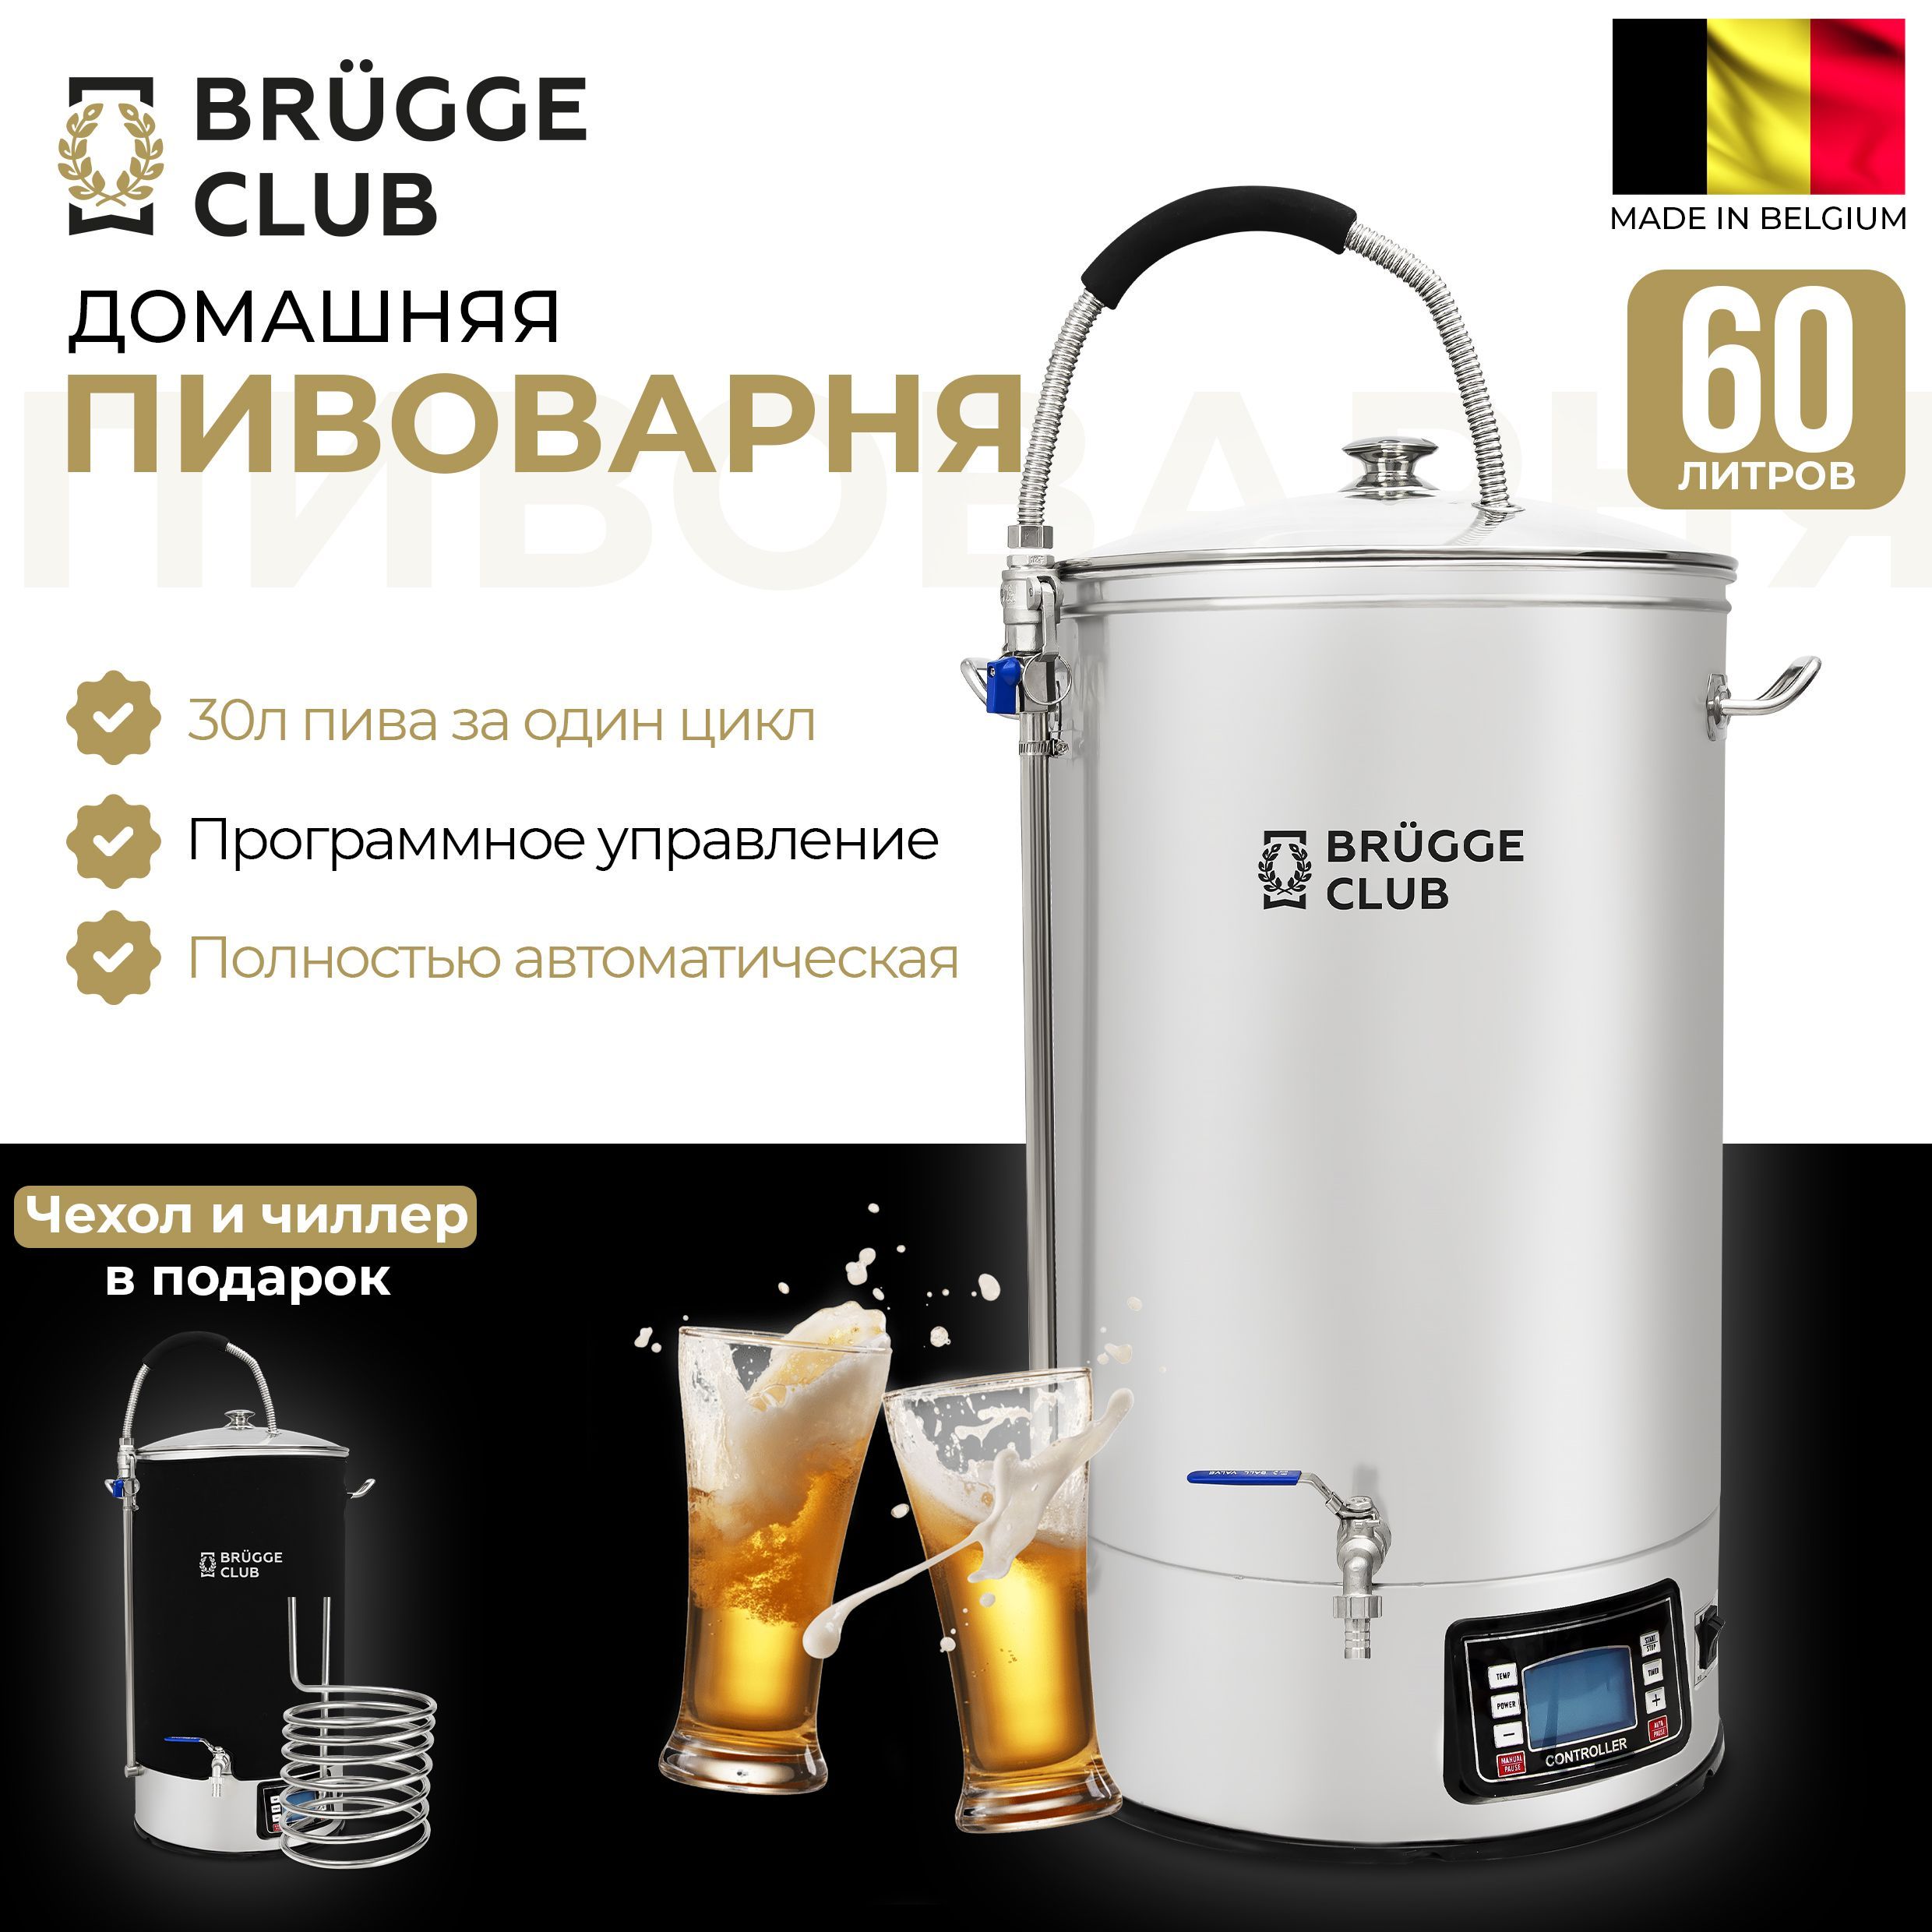 ПивоварнядомашняяавтоматическаяBrugge(Брюгге),60литров